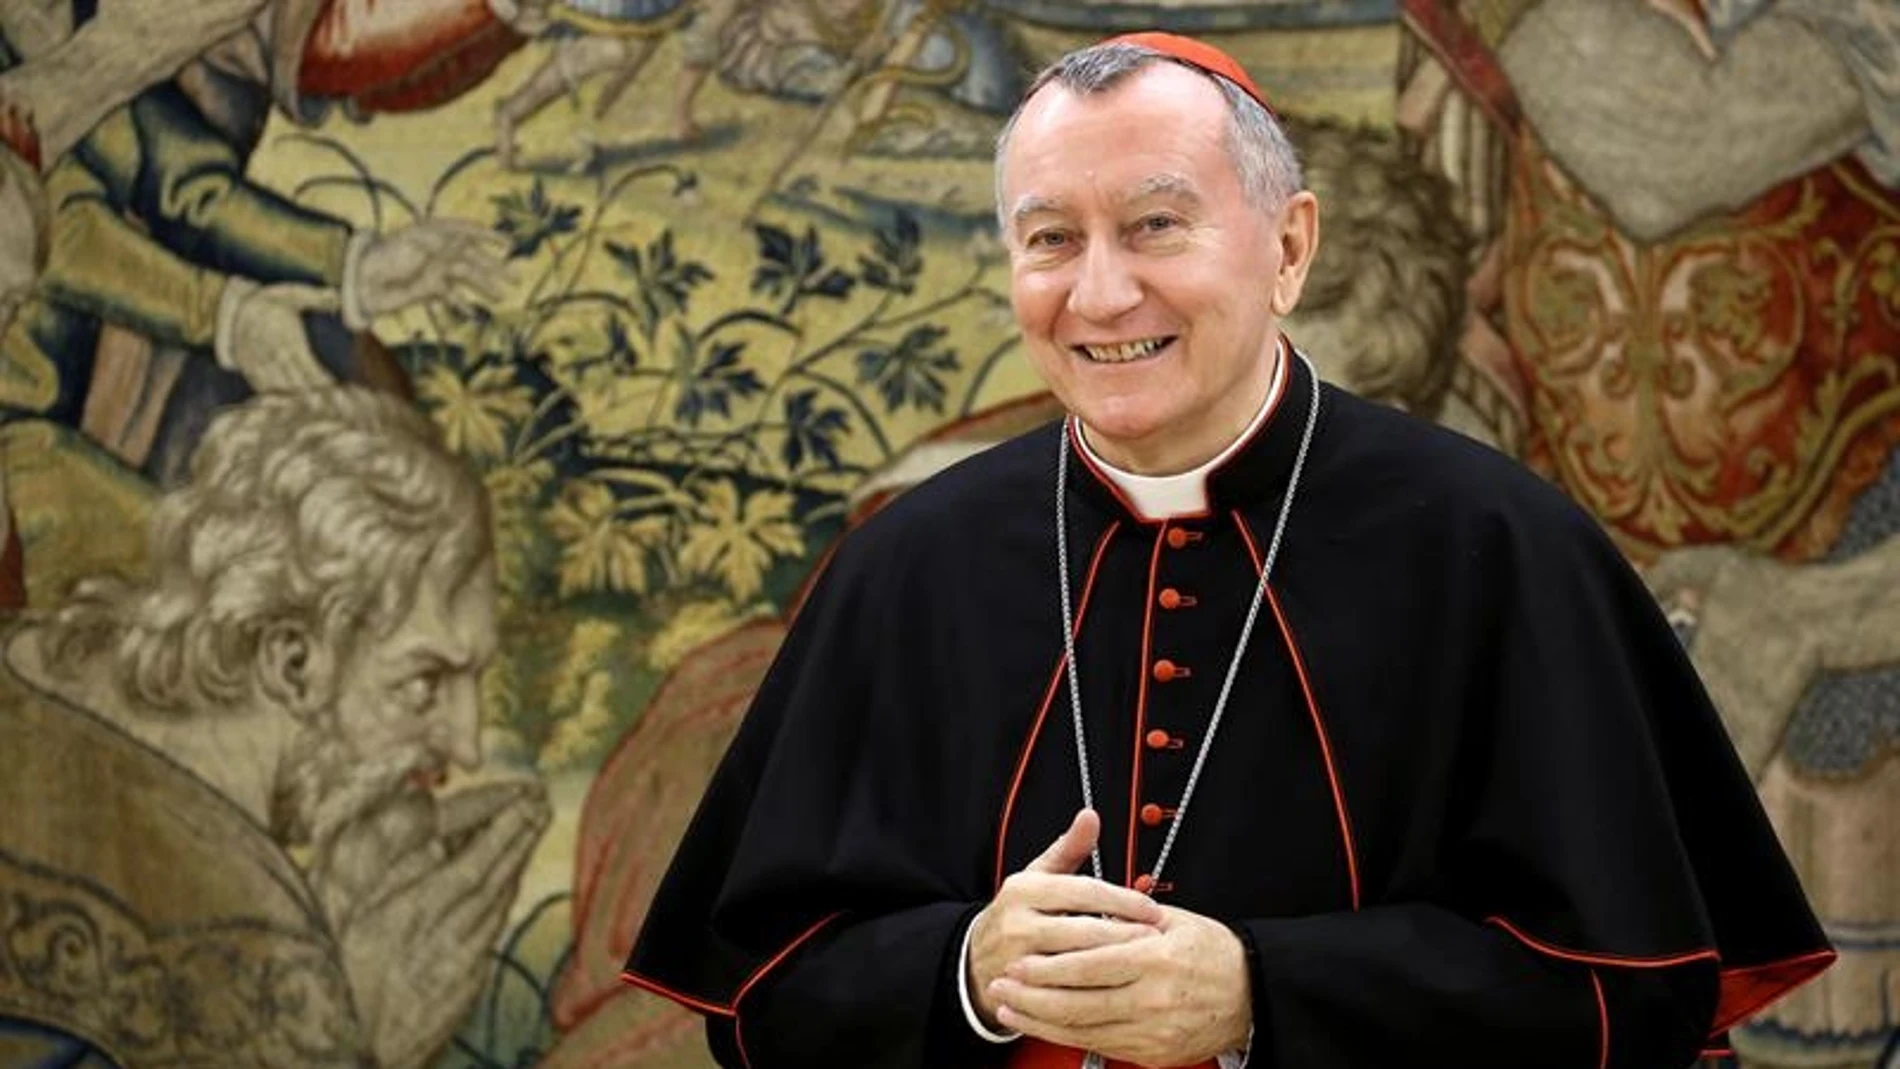 El secretario de Estado de la Sanda Sede, el cardenal Pietro Parolin